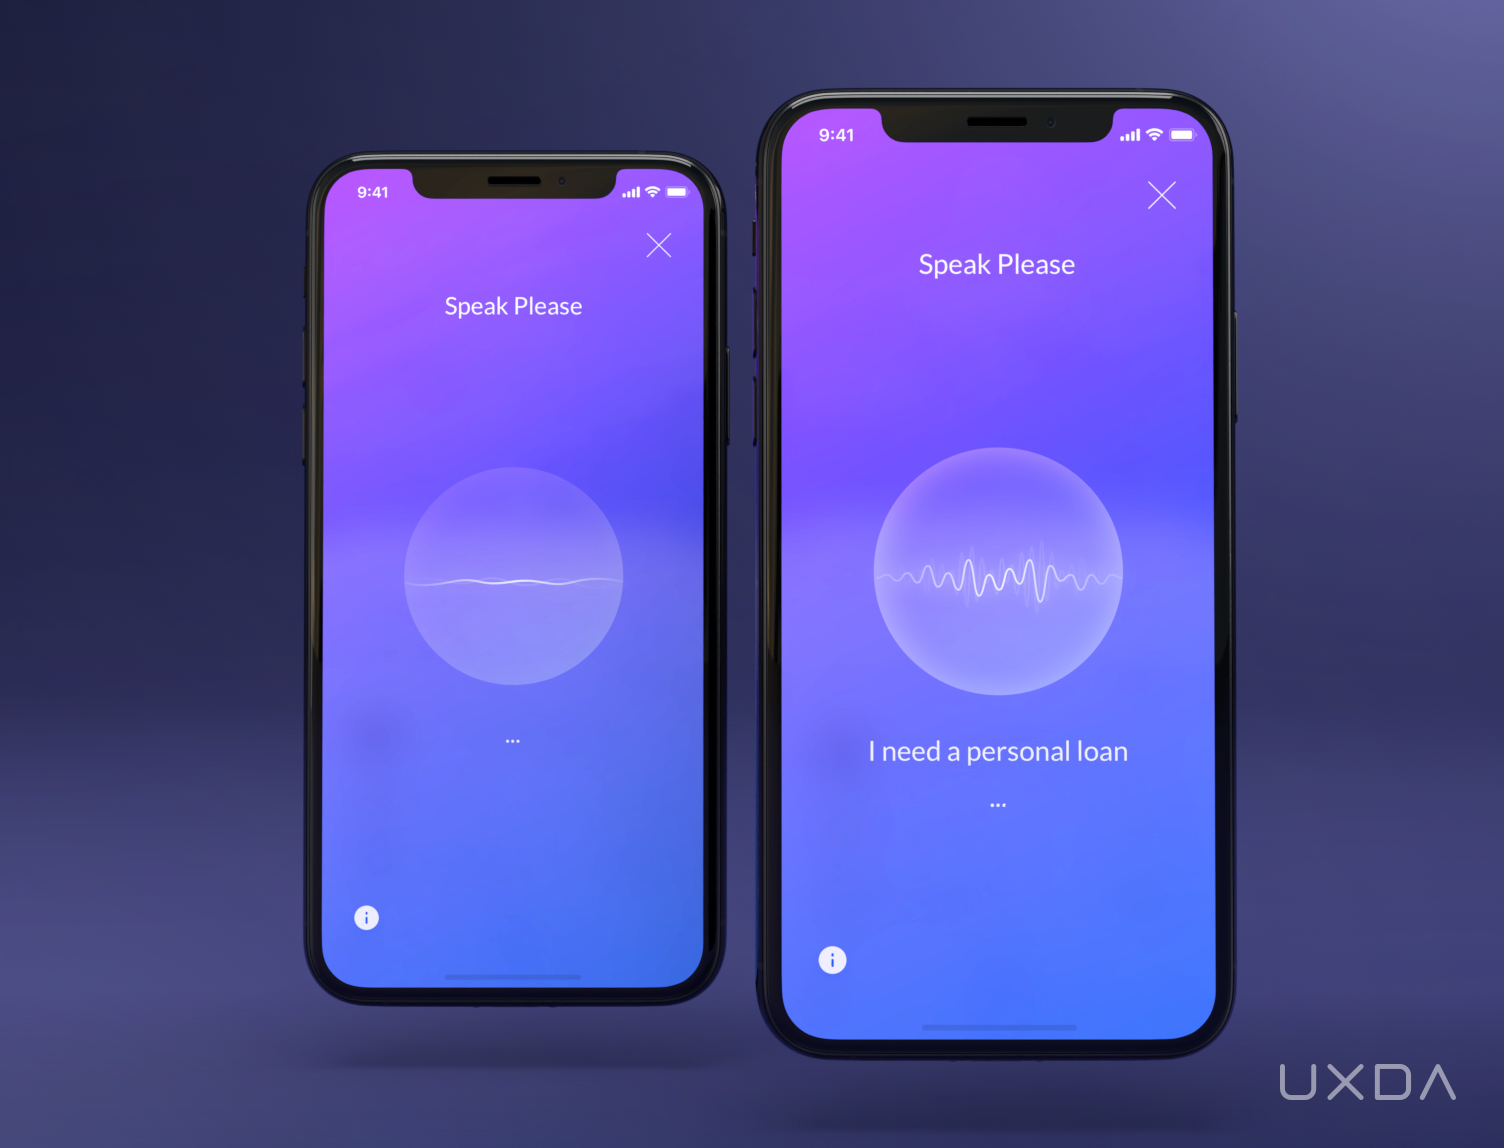 ux case study design mobile bank super app conversational banking design AI voice assistant